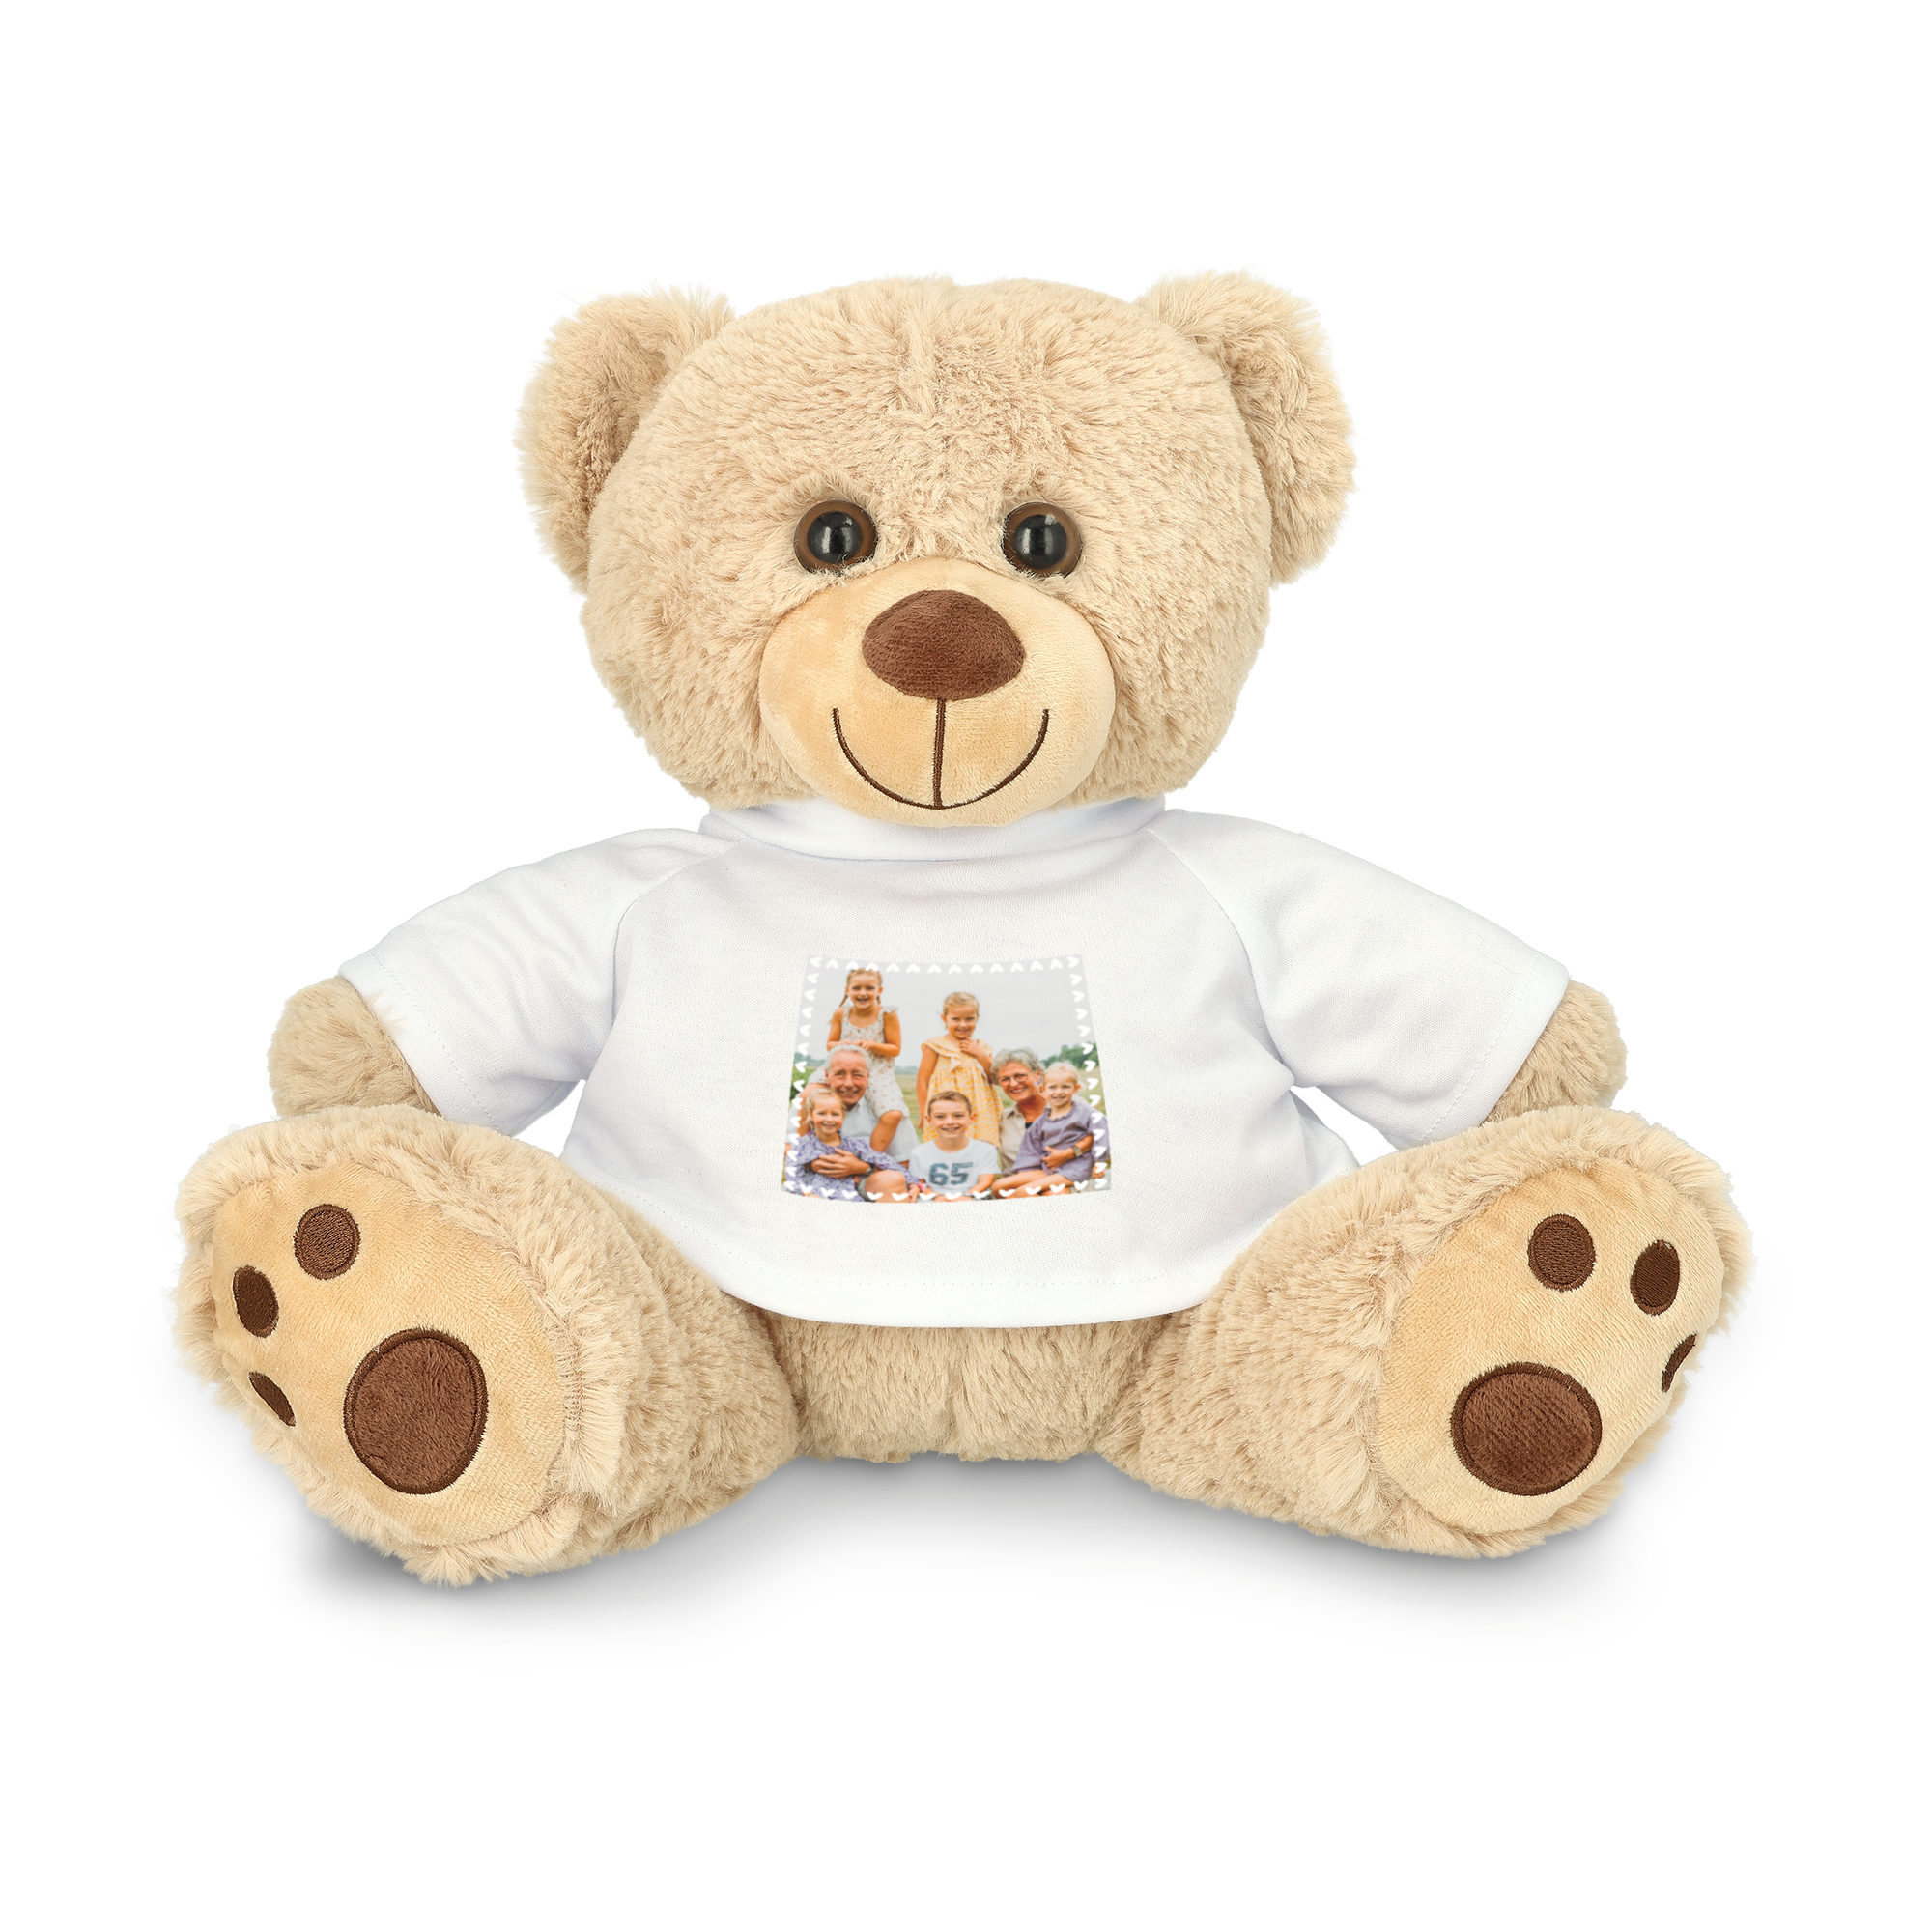 Personalised cuddly toy - Teddy bear - 30 cm